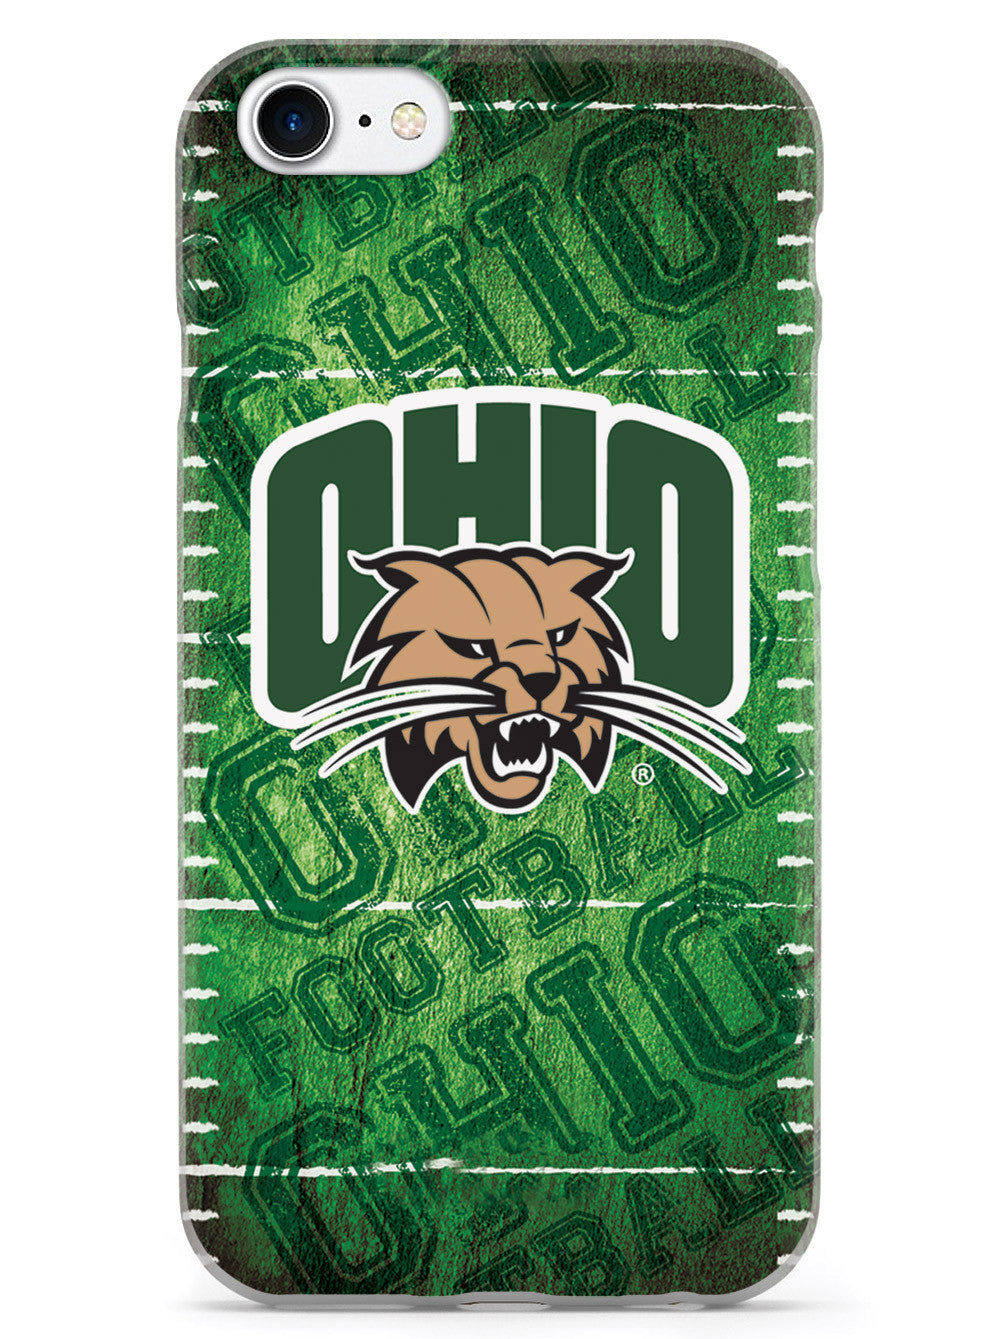 Ohio University Bobcats - Football Case